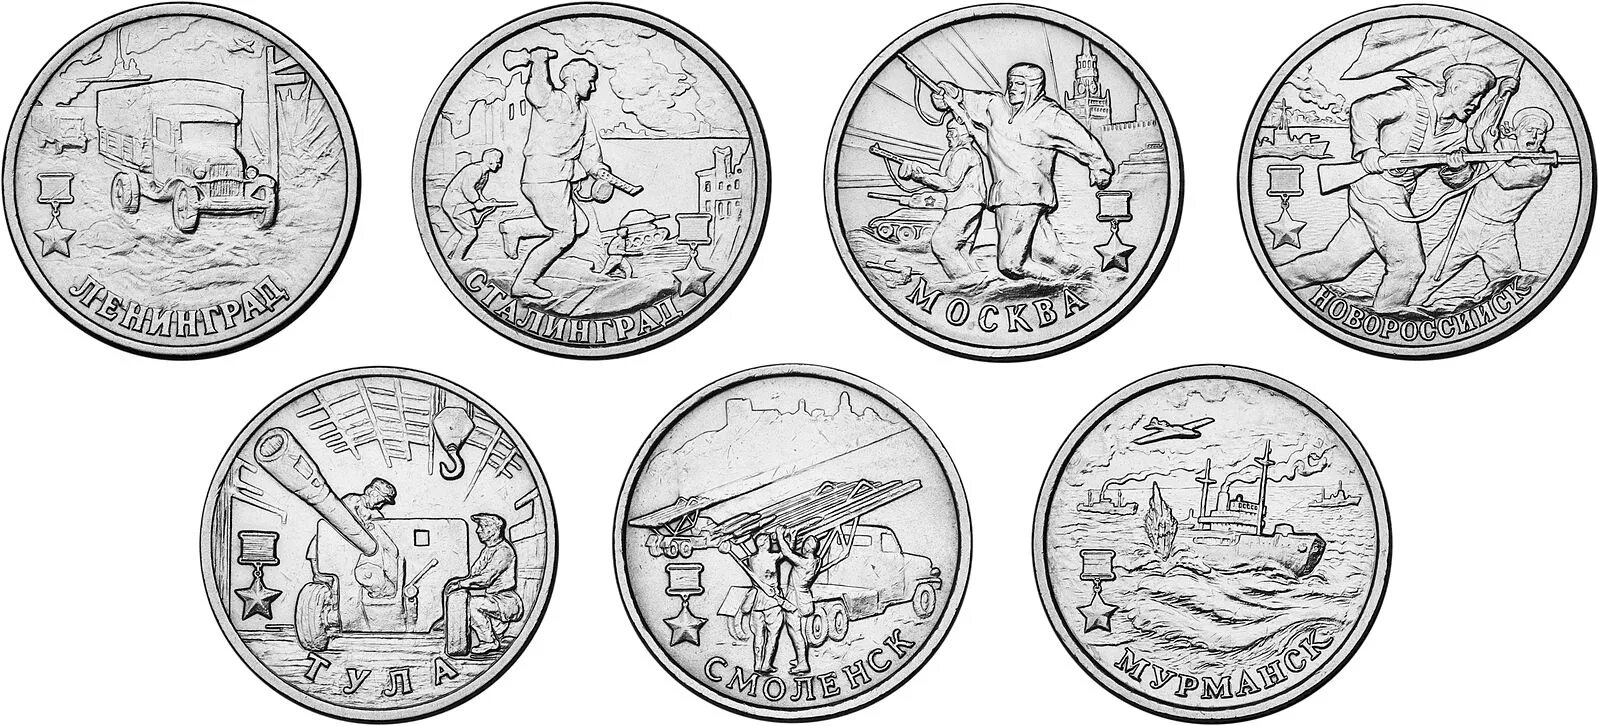 1 к 2000 г. Монеты 2 рубля 2000 года города герои. Коллекция монет 2 рубля города герои.